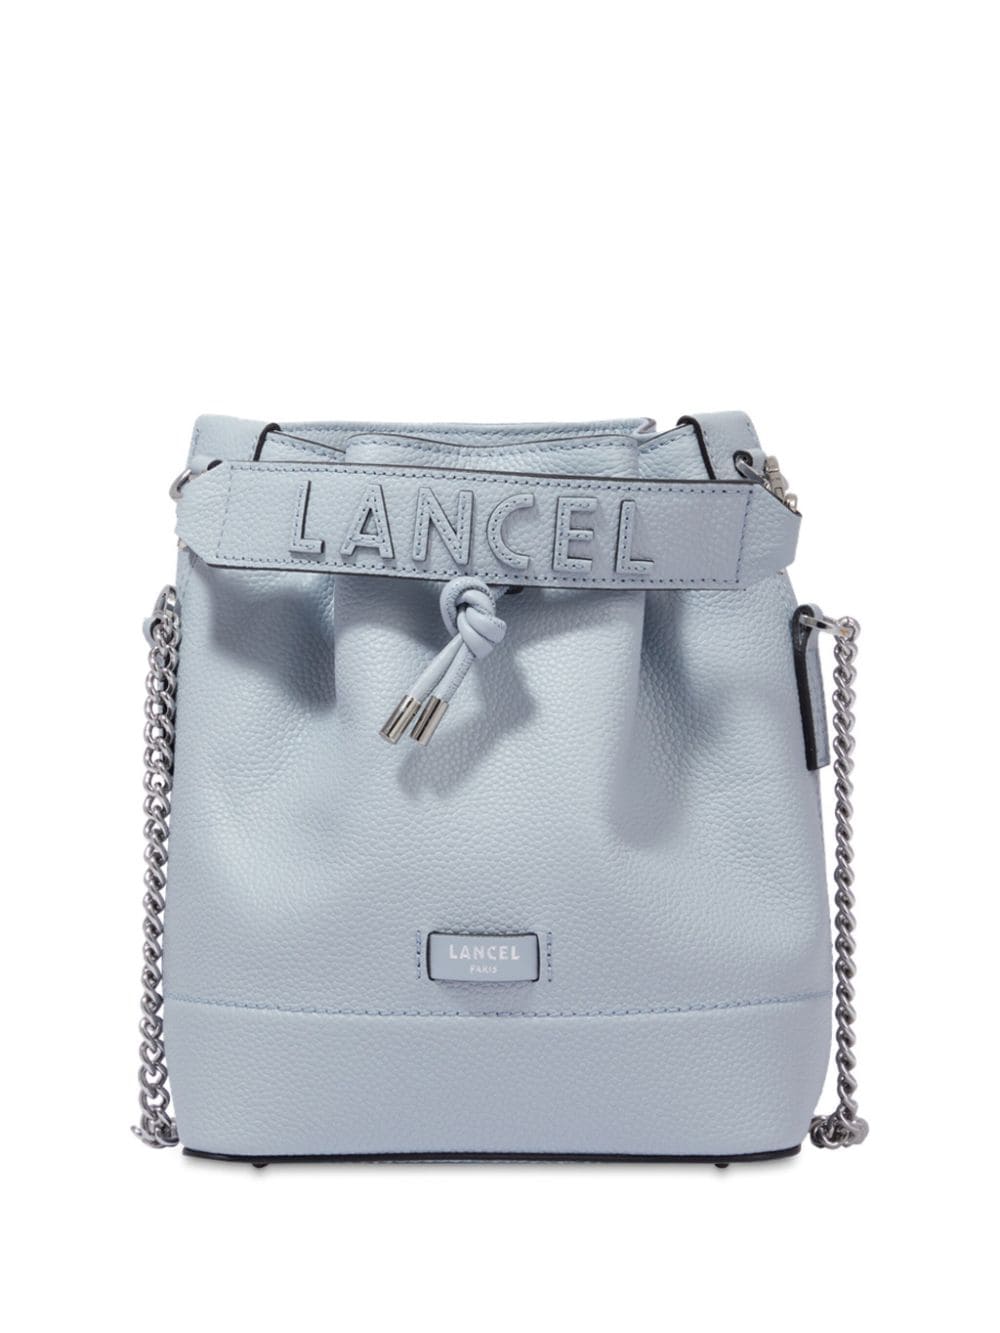 Lancel small leather bucket bag - Blue von Lancel